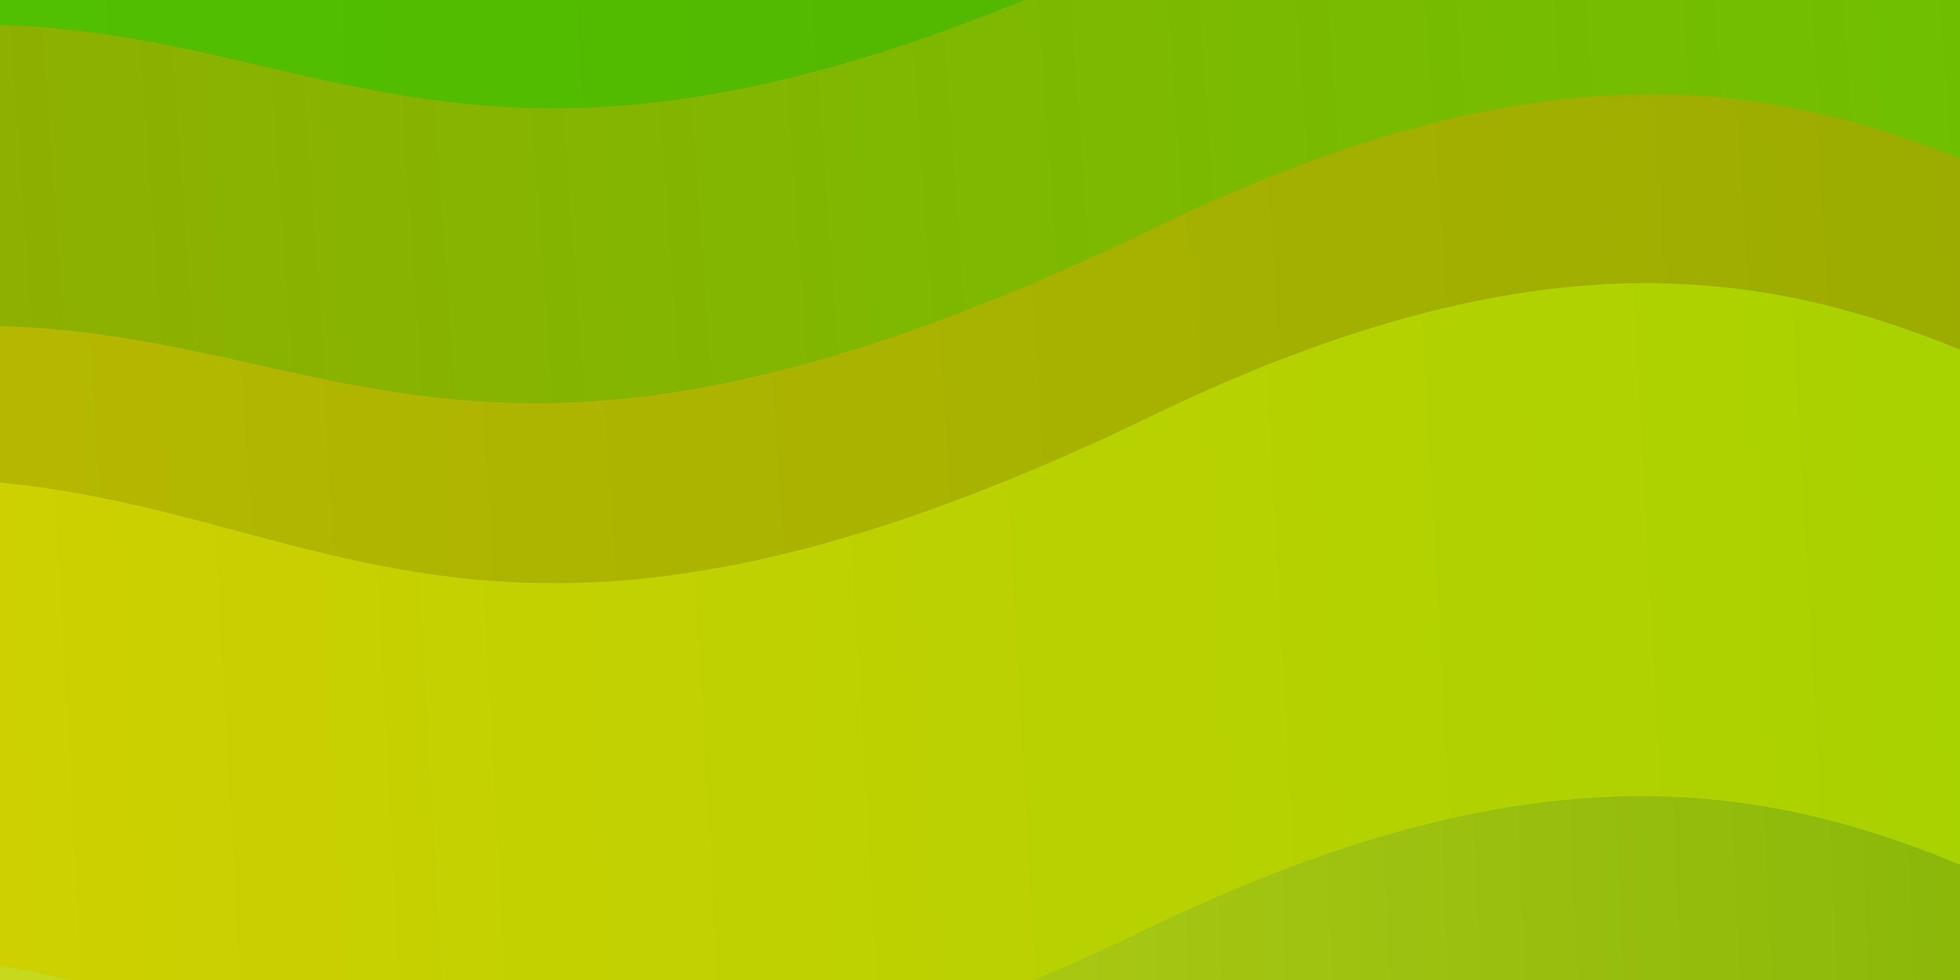 pano de fundo de vetor verde e amarelo claro com linhas dobradas.